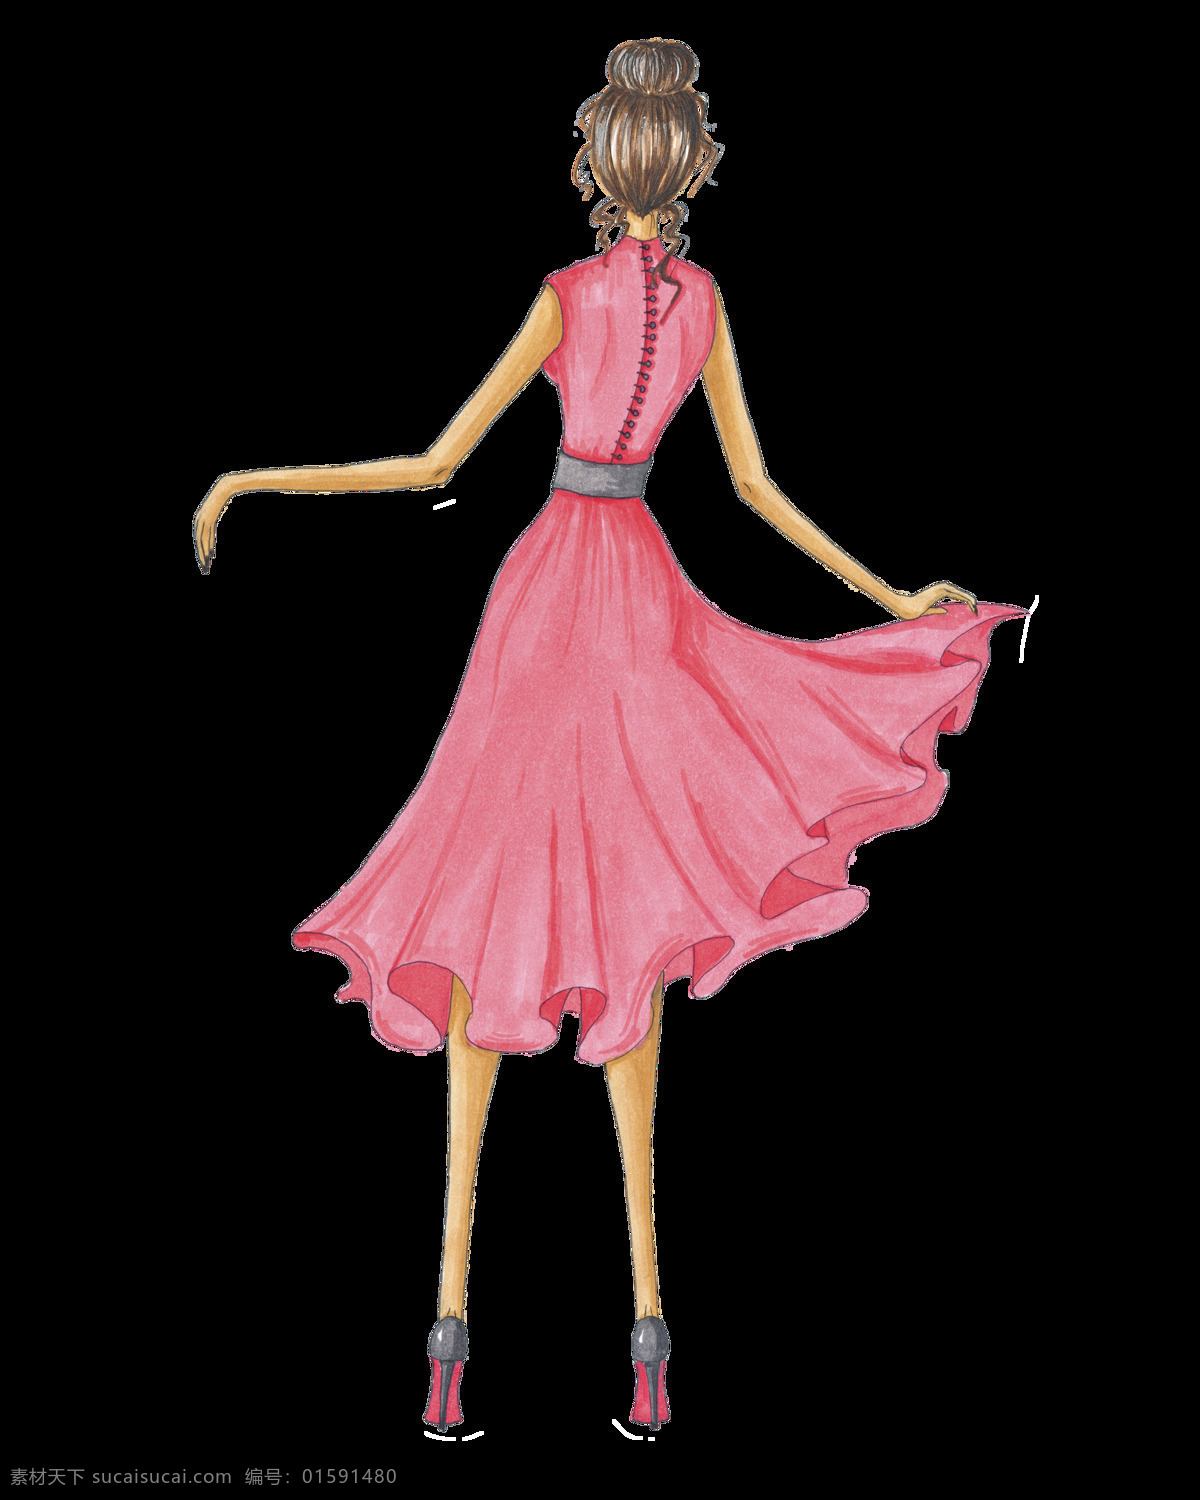 少女 背影 透明 装饰 手绘 粉色 裙子 矢量素材 设计素材